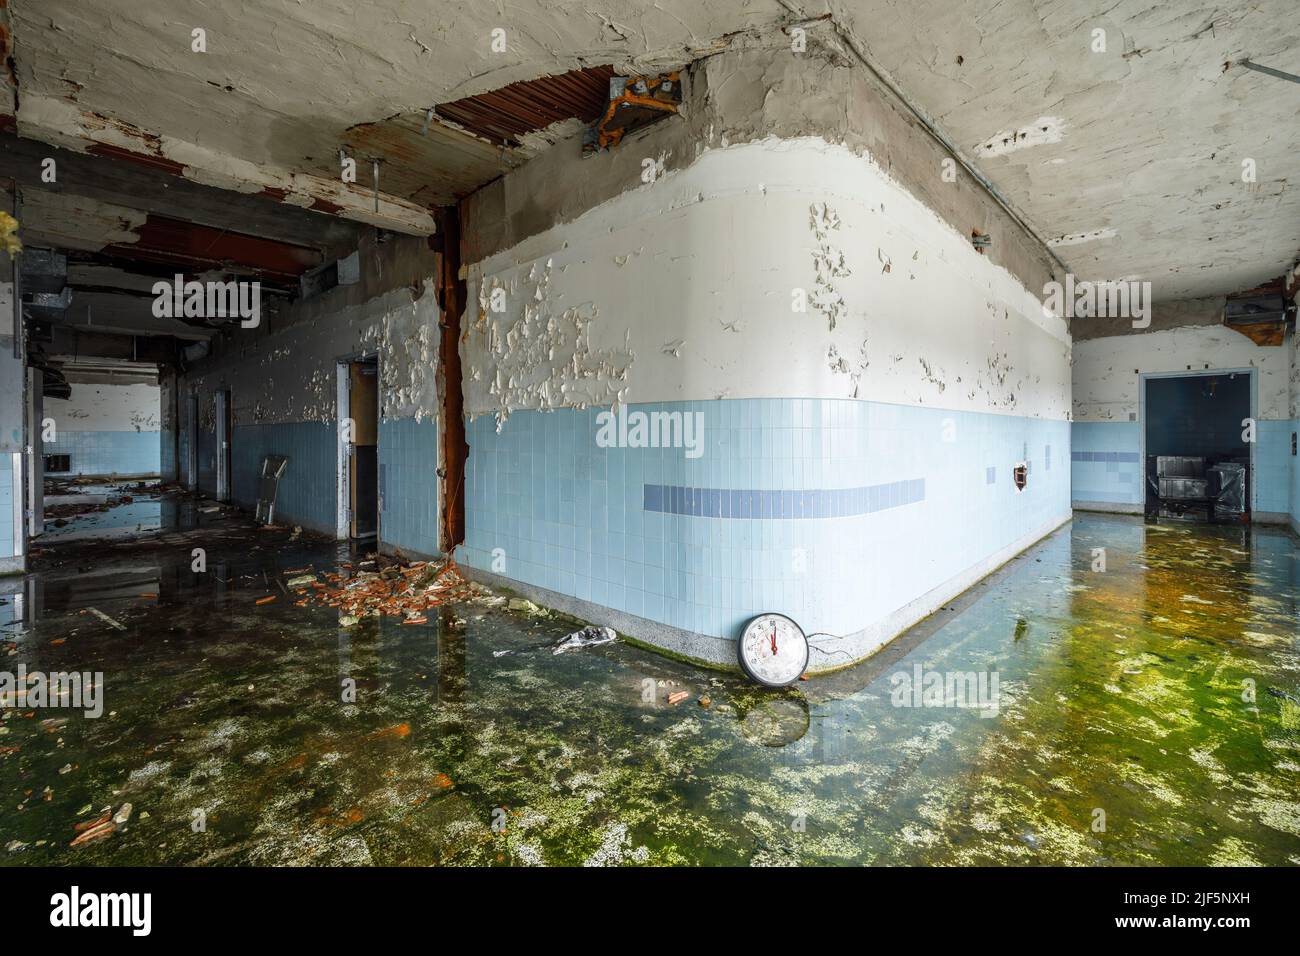 A hallway inside an abandoned hospital. Stock Photo